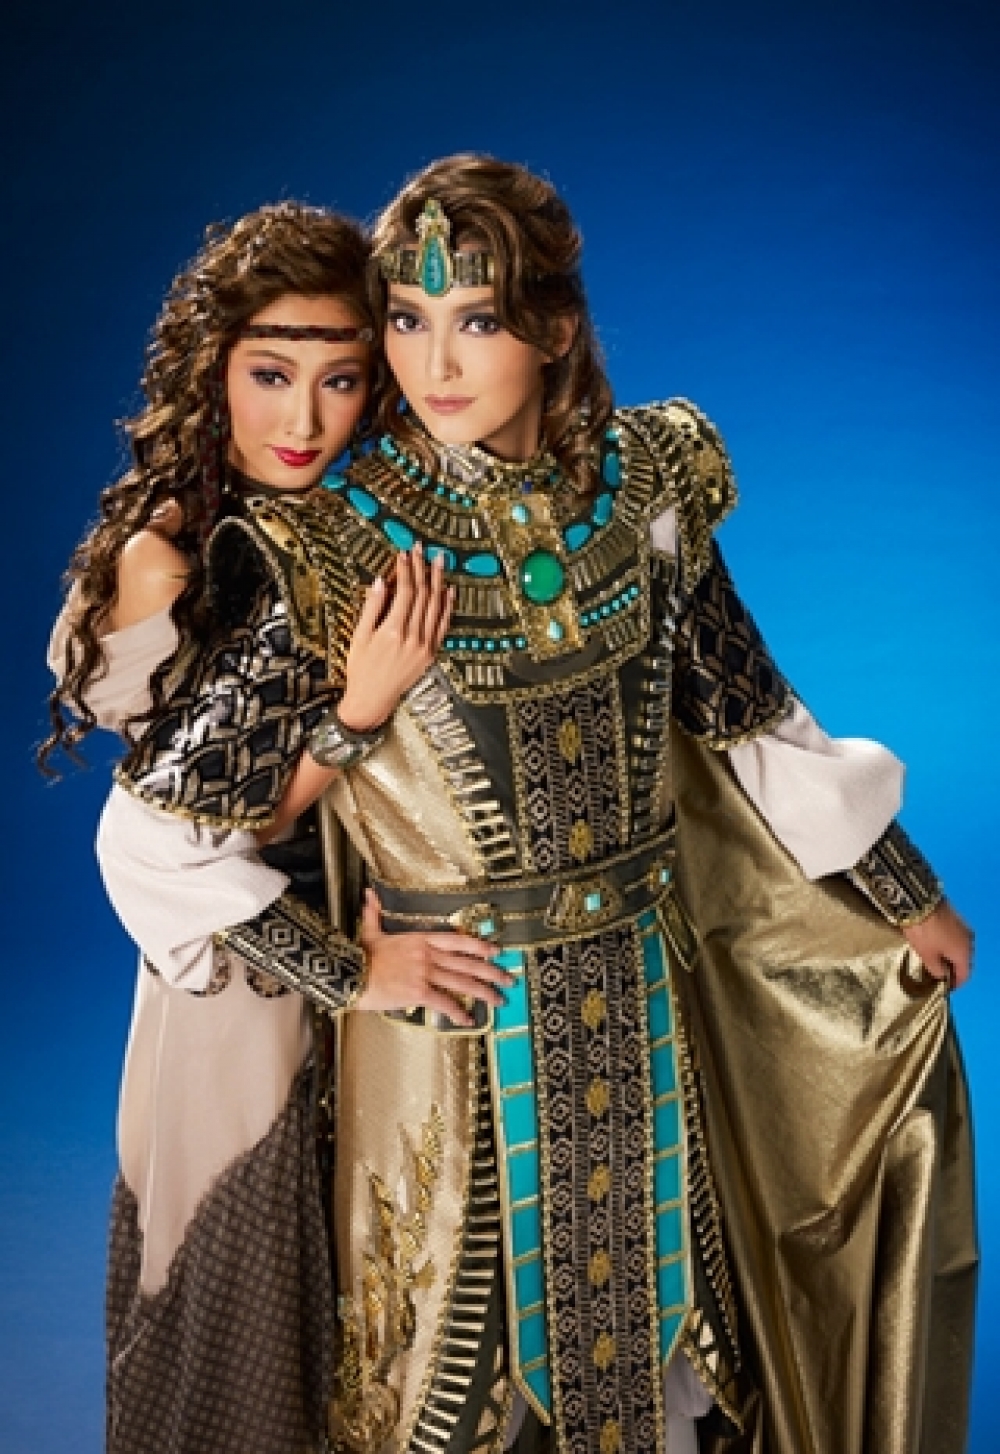 エジプトの若き将軍ラダメスと、奴隷となったエチオピア王女アイーダの悲恋を華やかにドラマティックに描く！ 宝塚歌劇 宙組公演『王家に捧ぐ歌』 －オペラ 「アイーダ」より－ | Kiss PRESS(キッスプレス)